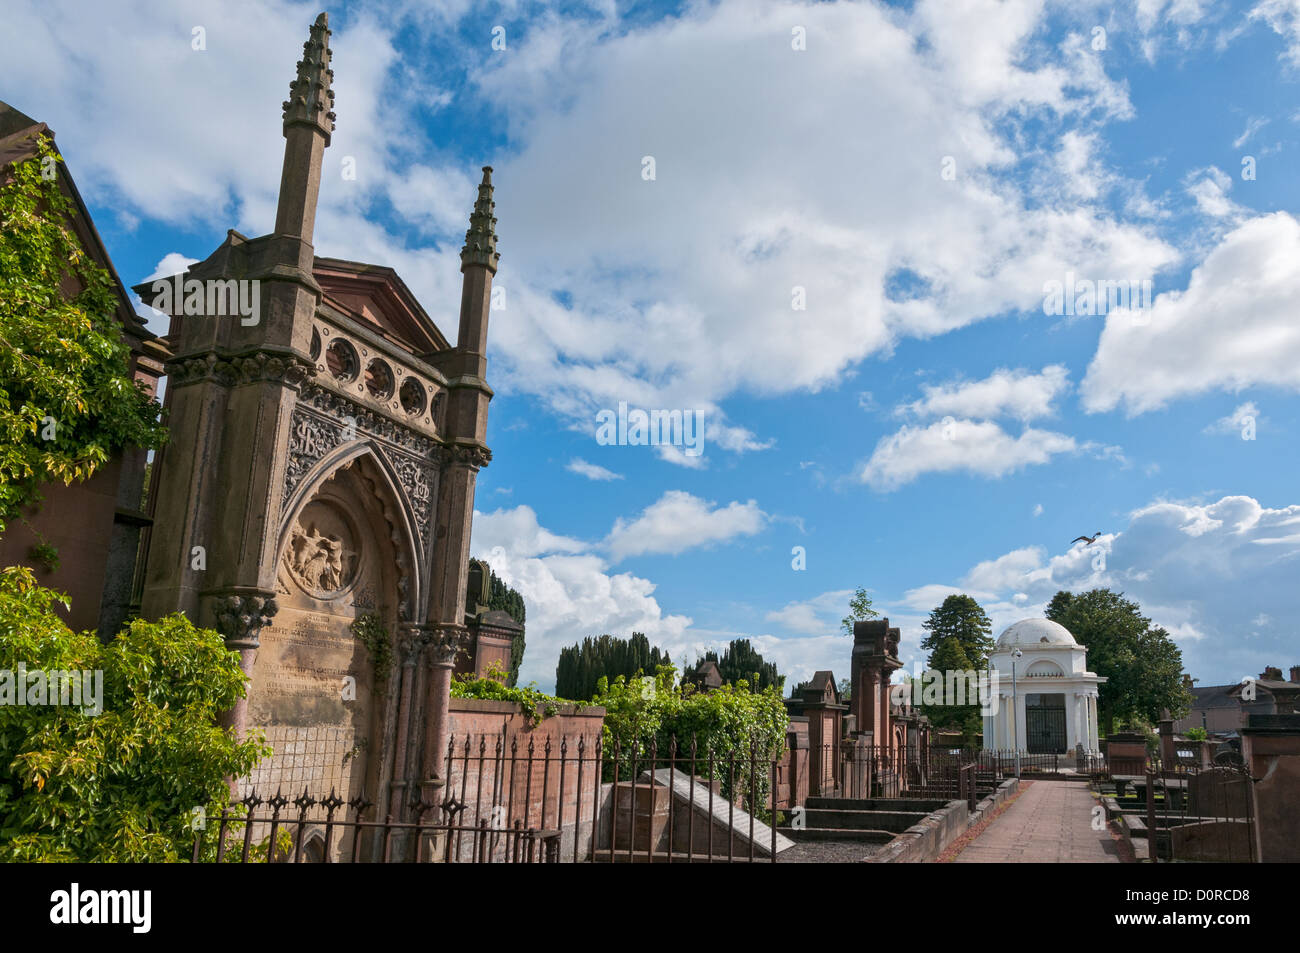 Scotland, Dumfries, St. Michael's Churchyard, Robert Burns Mausoleum Stock Photo